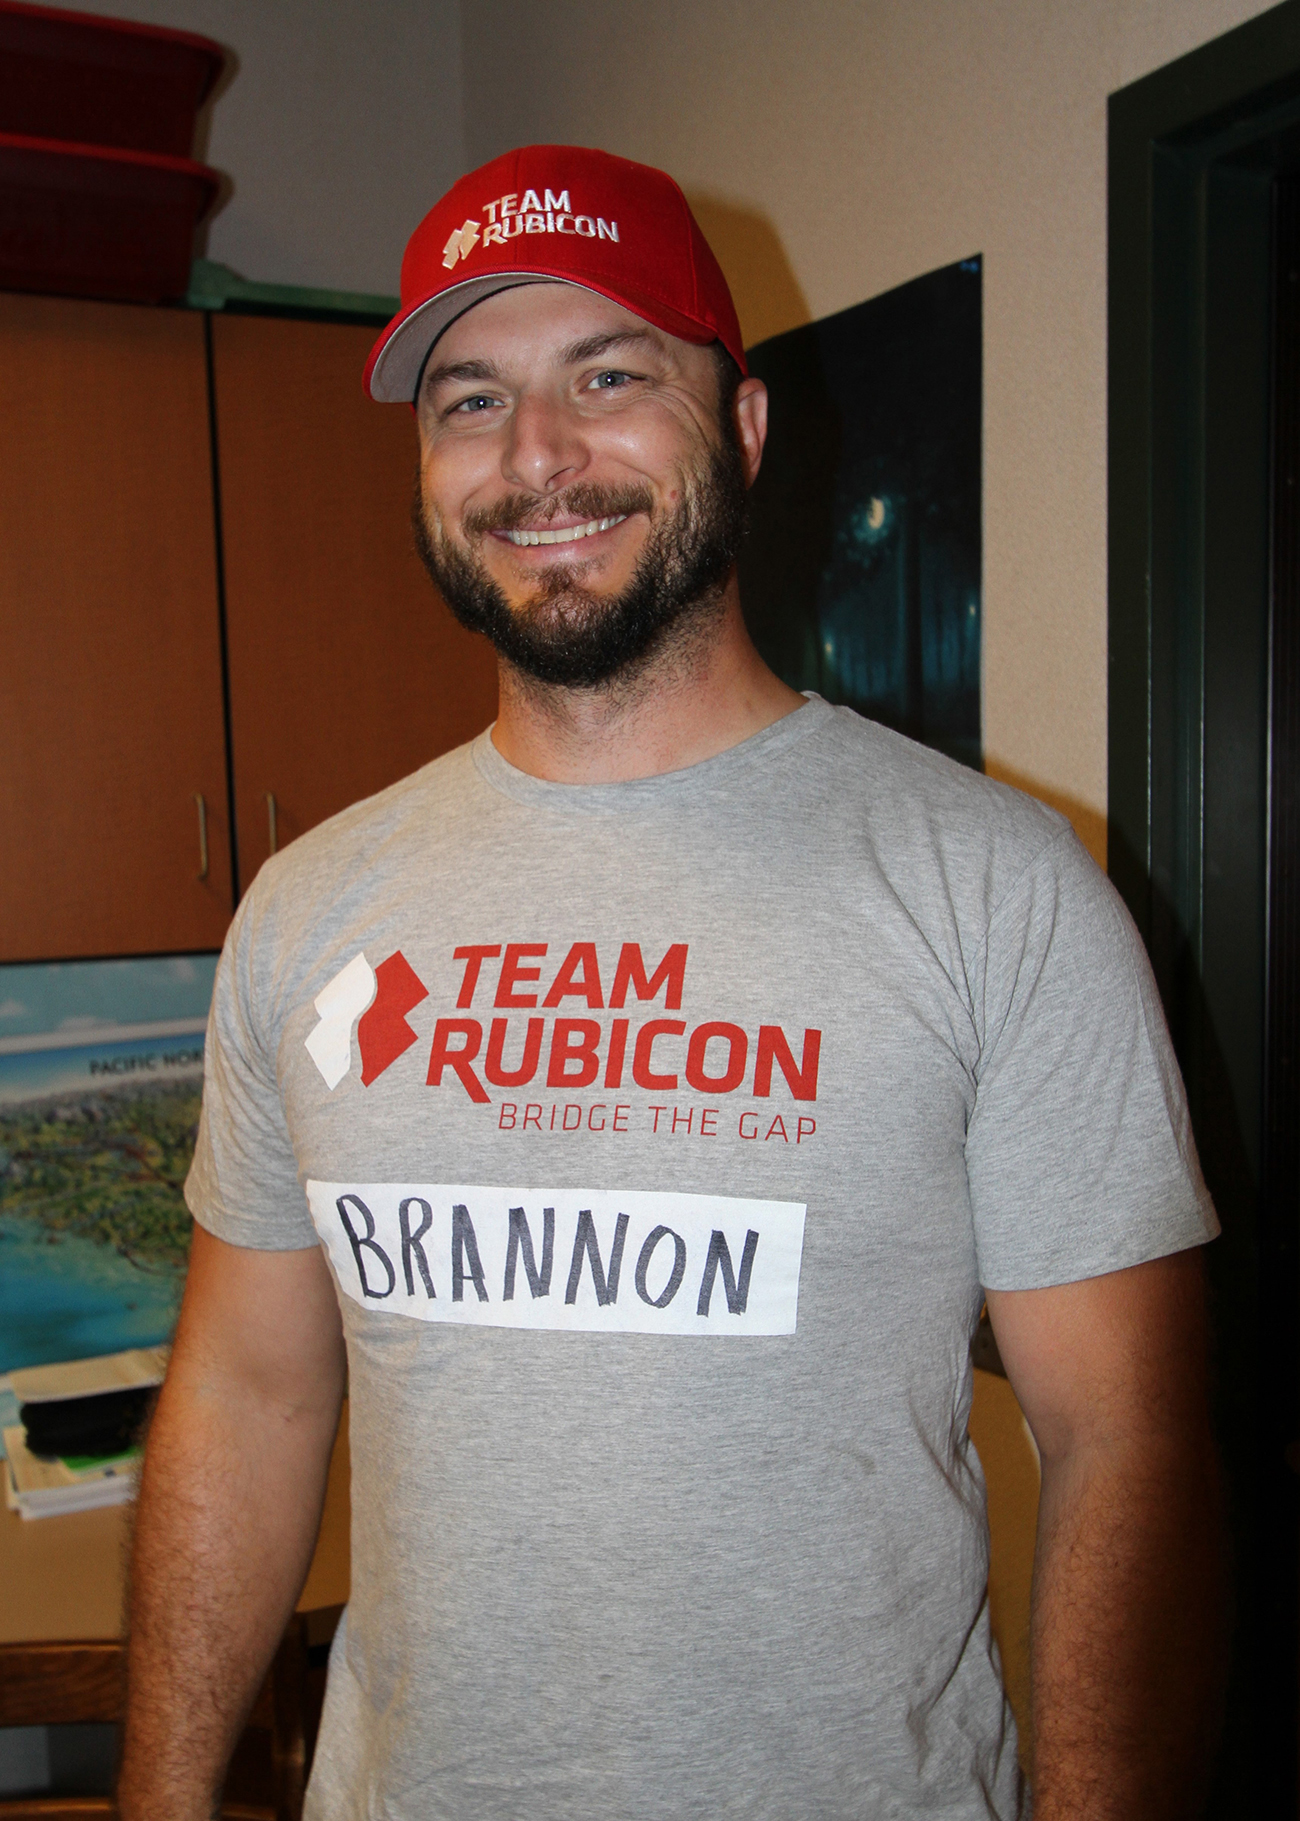 照片显示一名男子戴着 Team Rubicon 帽子和 Team Rubicon 球衣。